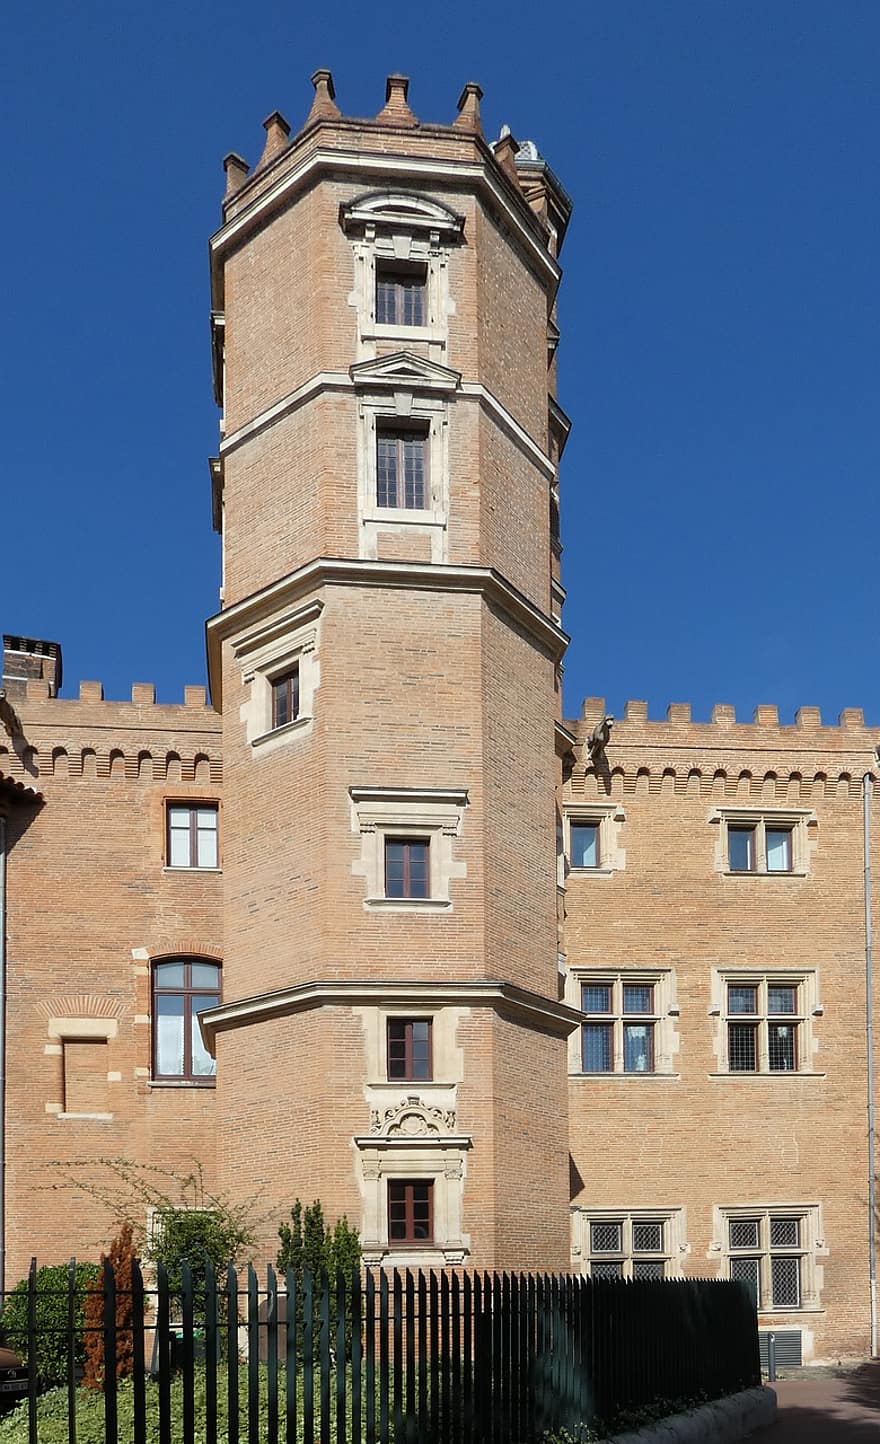 برج ، هندسة معمارية ، نصب تذكاري ، تاريخي ، 1400 ، Occitania